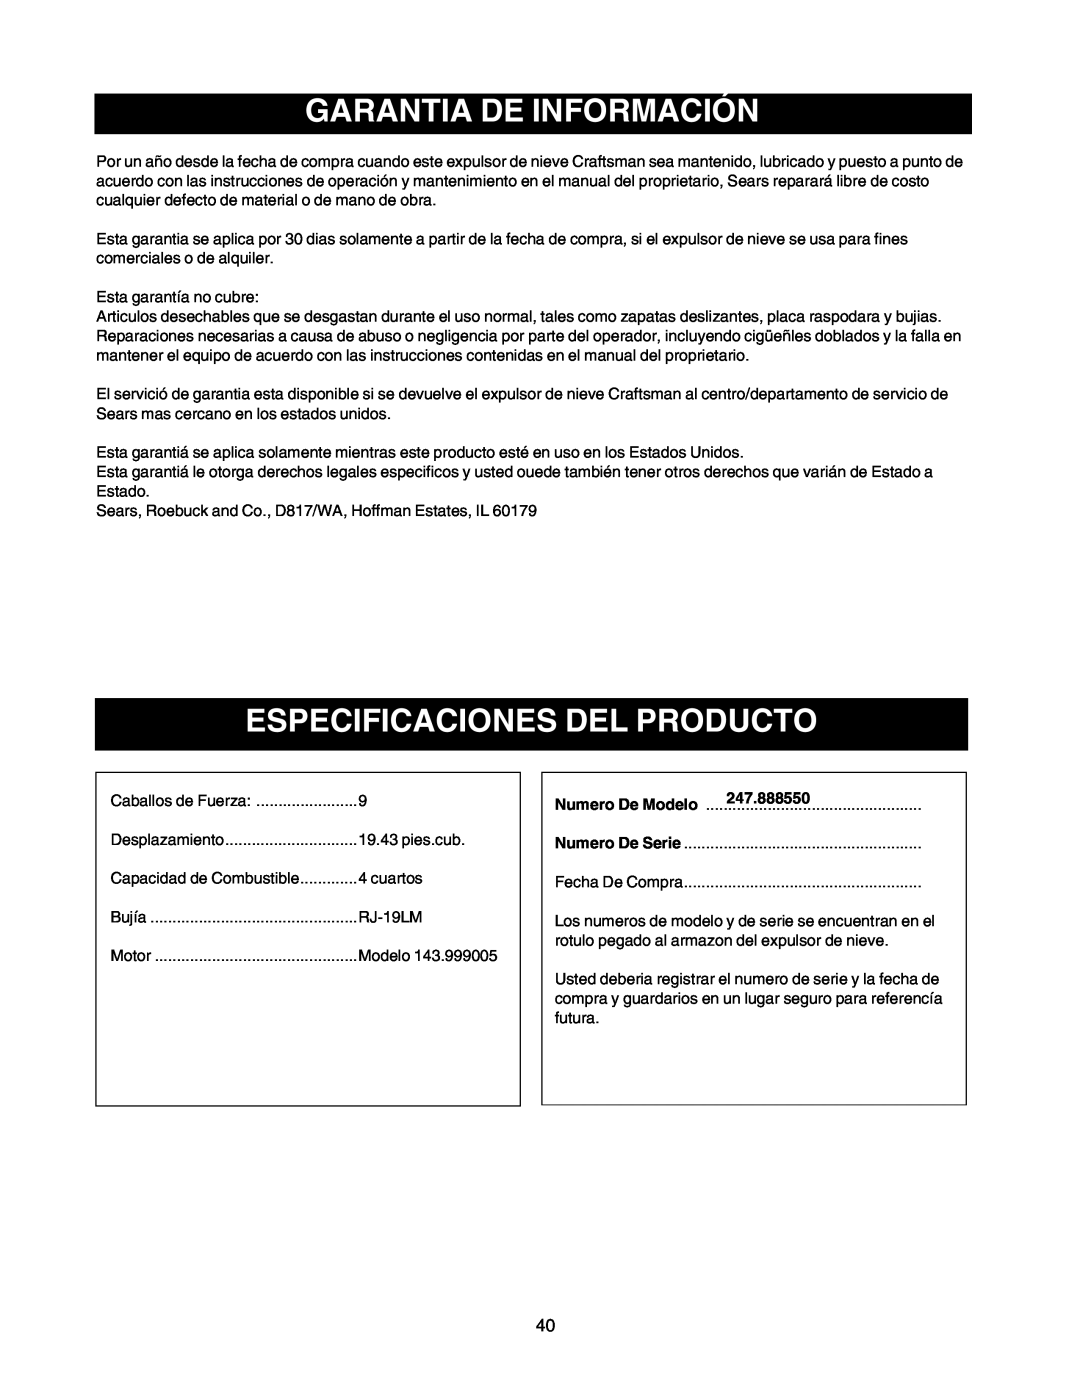 Craftsman Garantia De Información, Especificaciones Del Producto, Numero De Modelo, 247.888550, Numero De Serie 